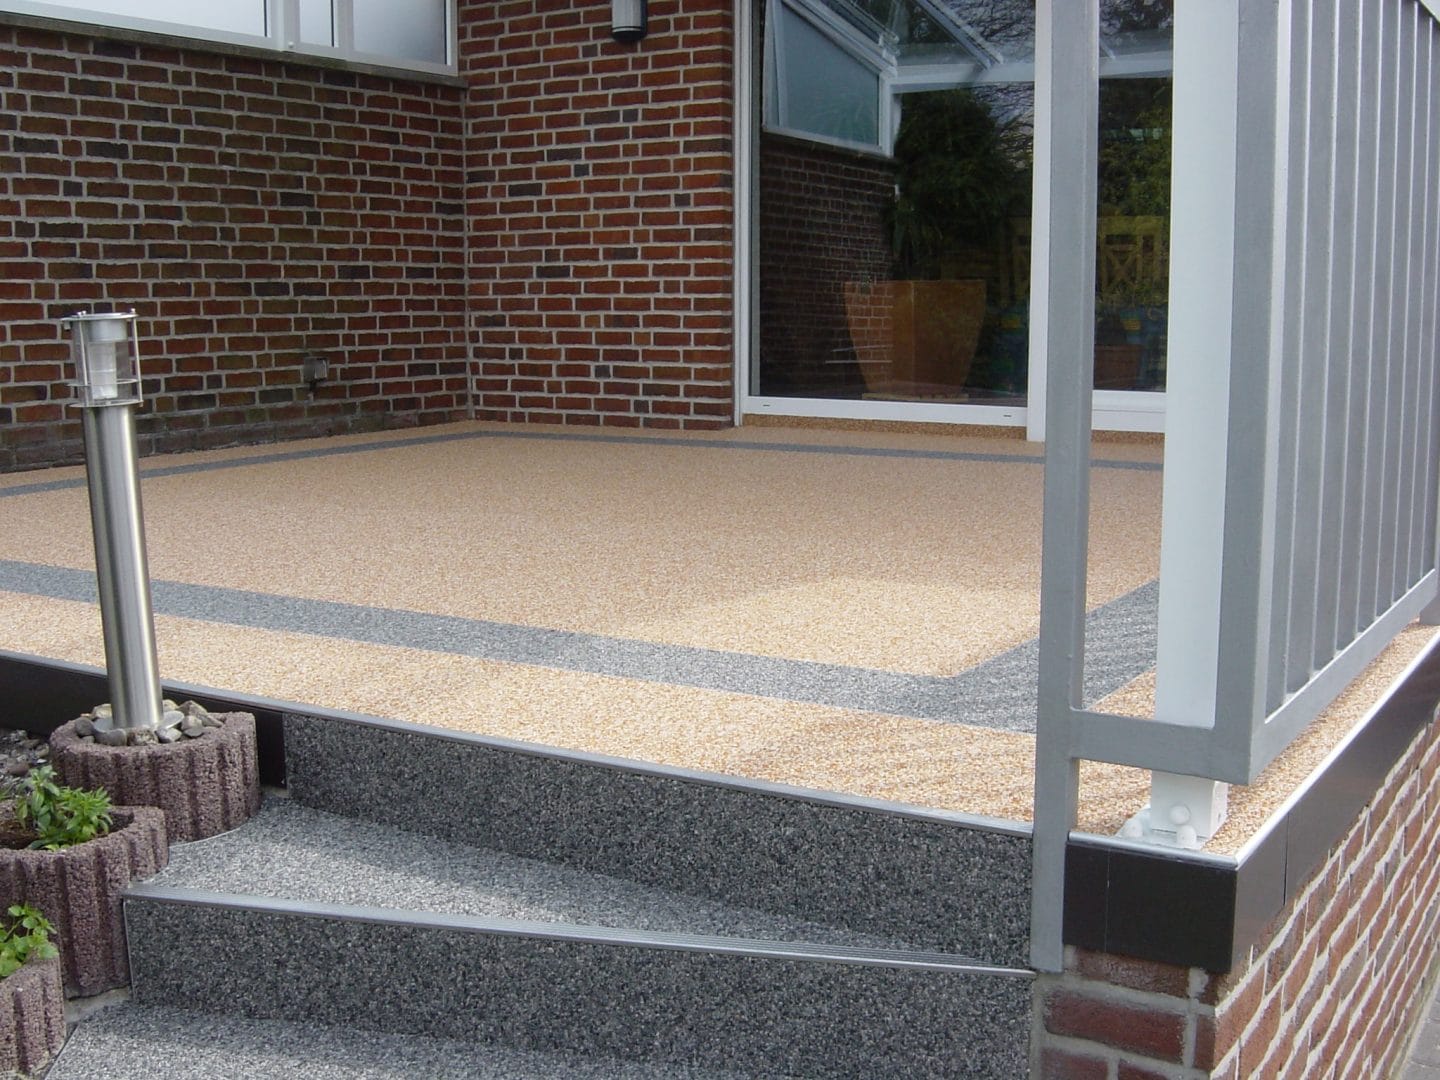 Neuer grau mehlierter Treppenaufgang zu einer Terrasse mit neuem braun mehlierten Boden.